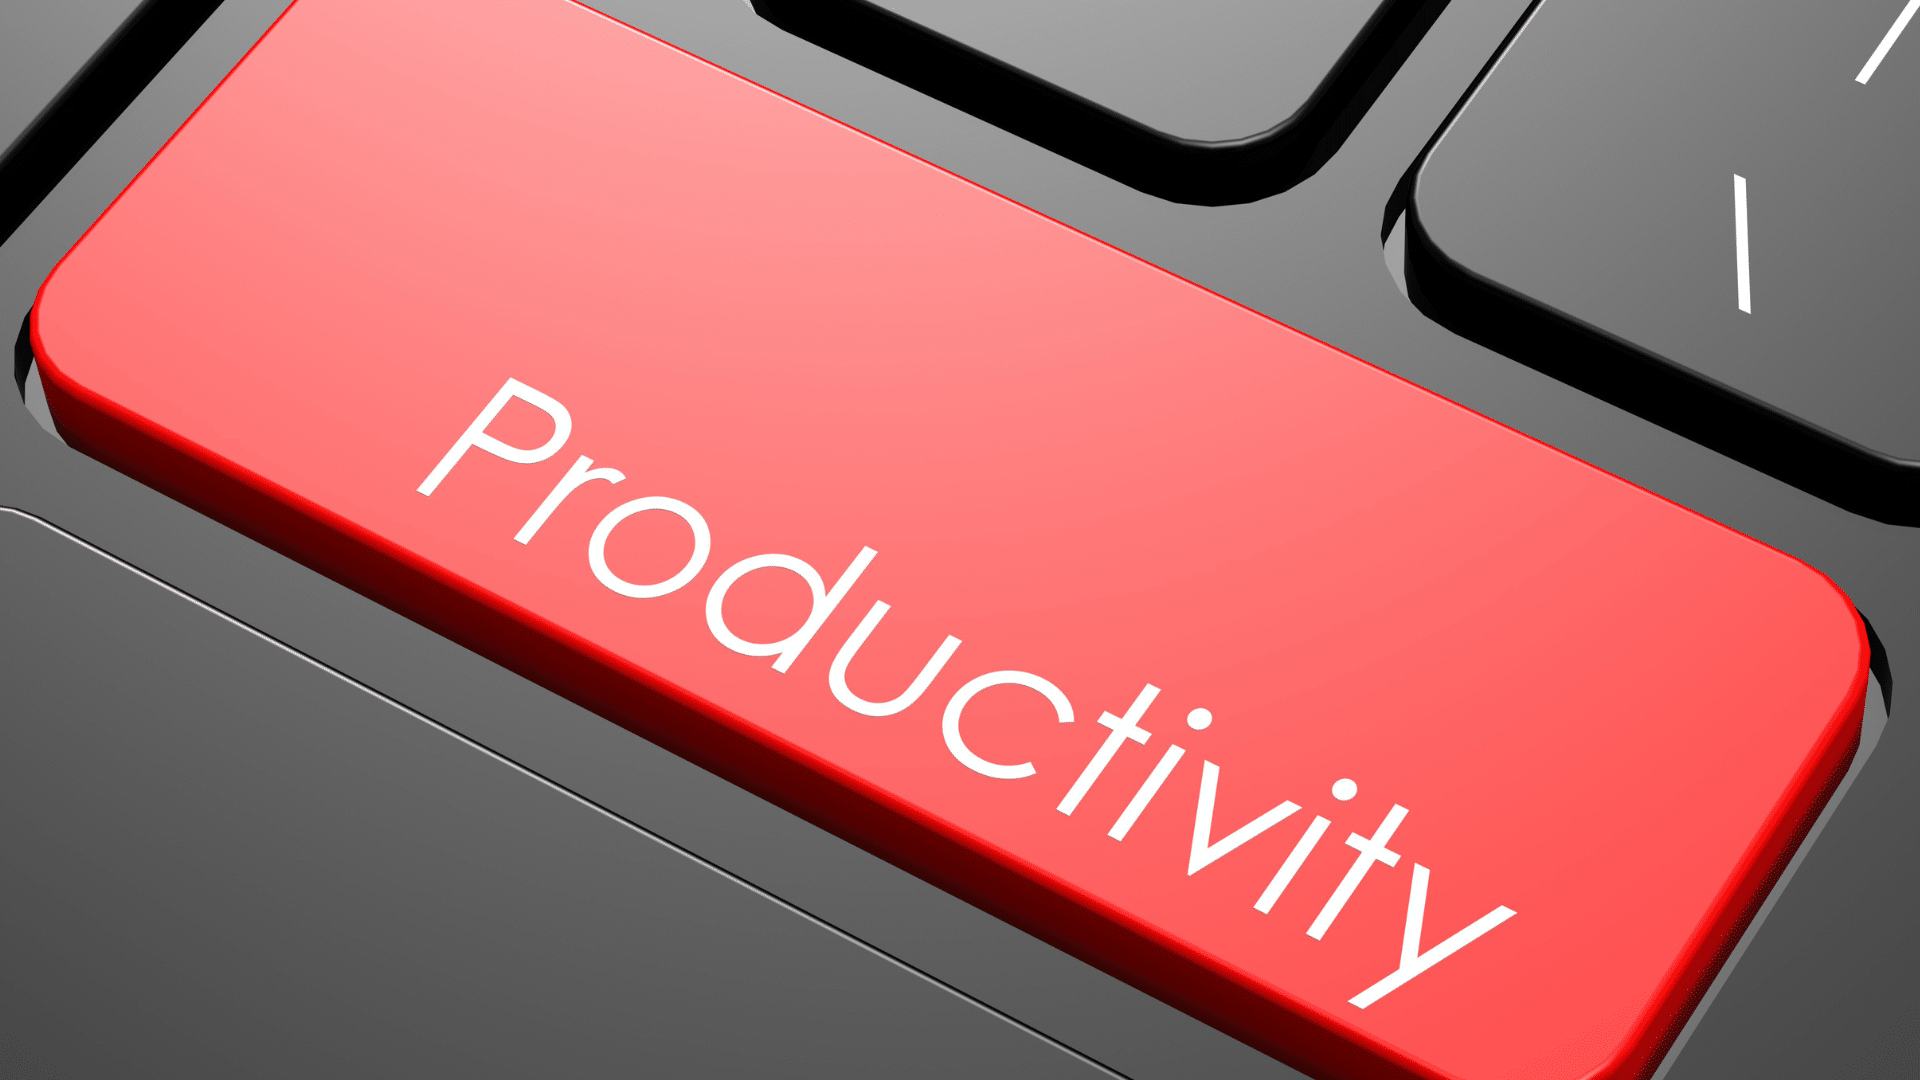  Verbessern Sie Ihre Produktivität mit Windows 10 Pro